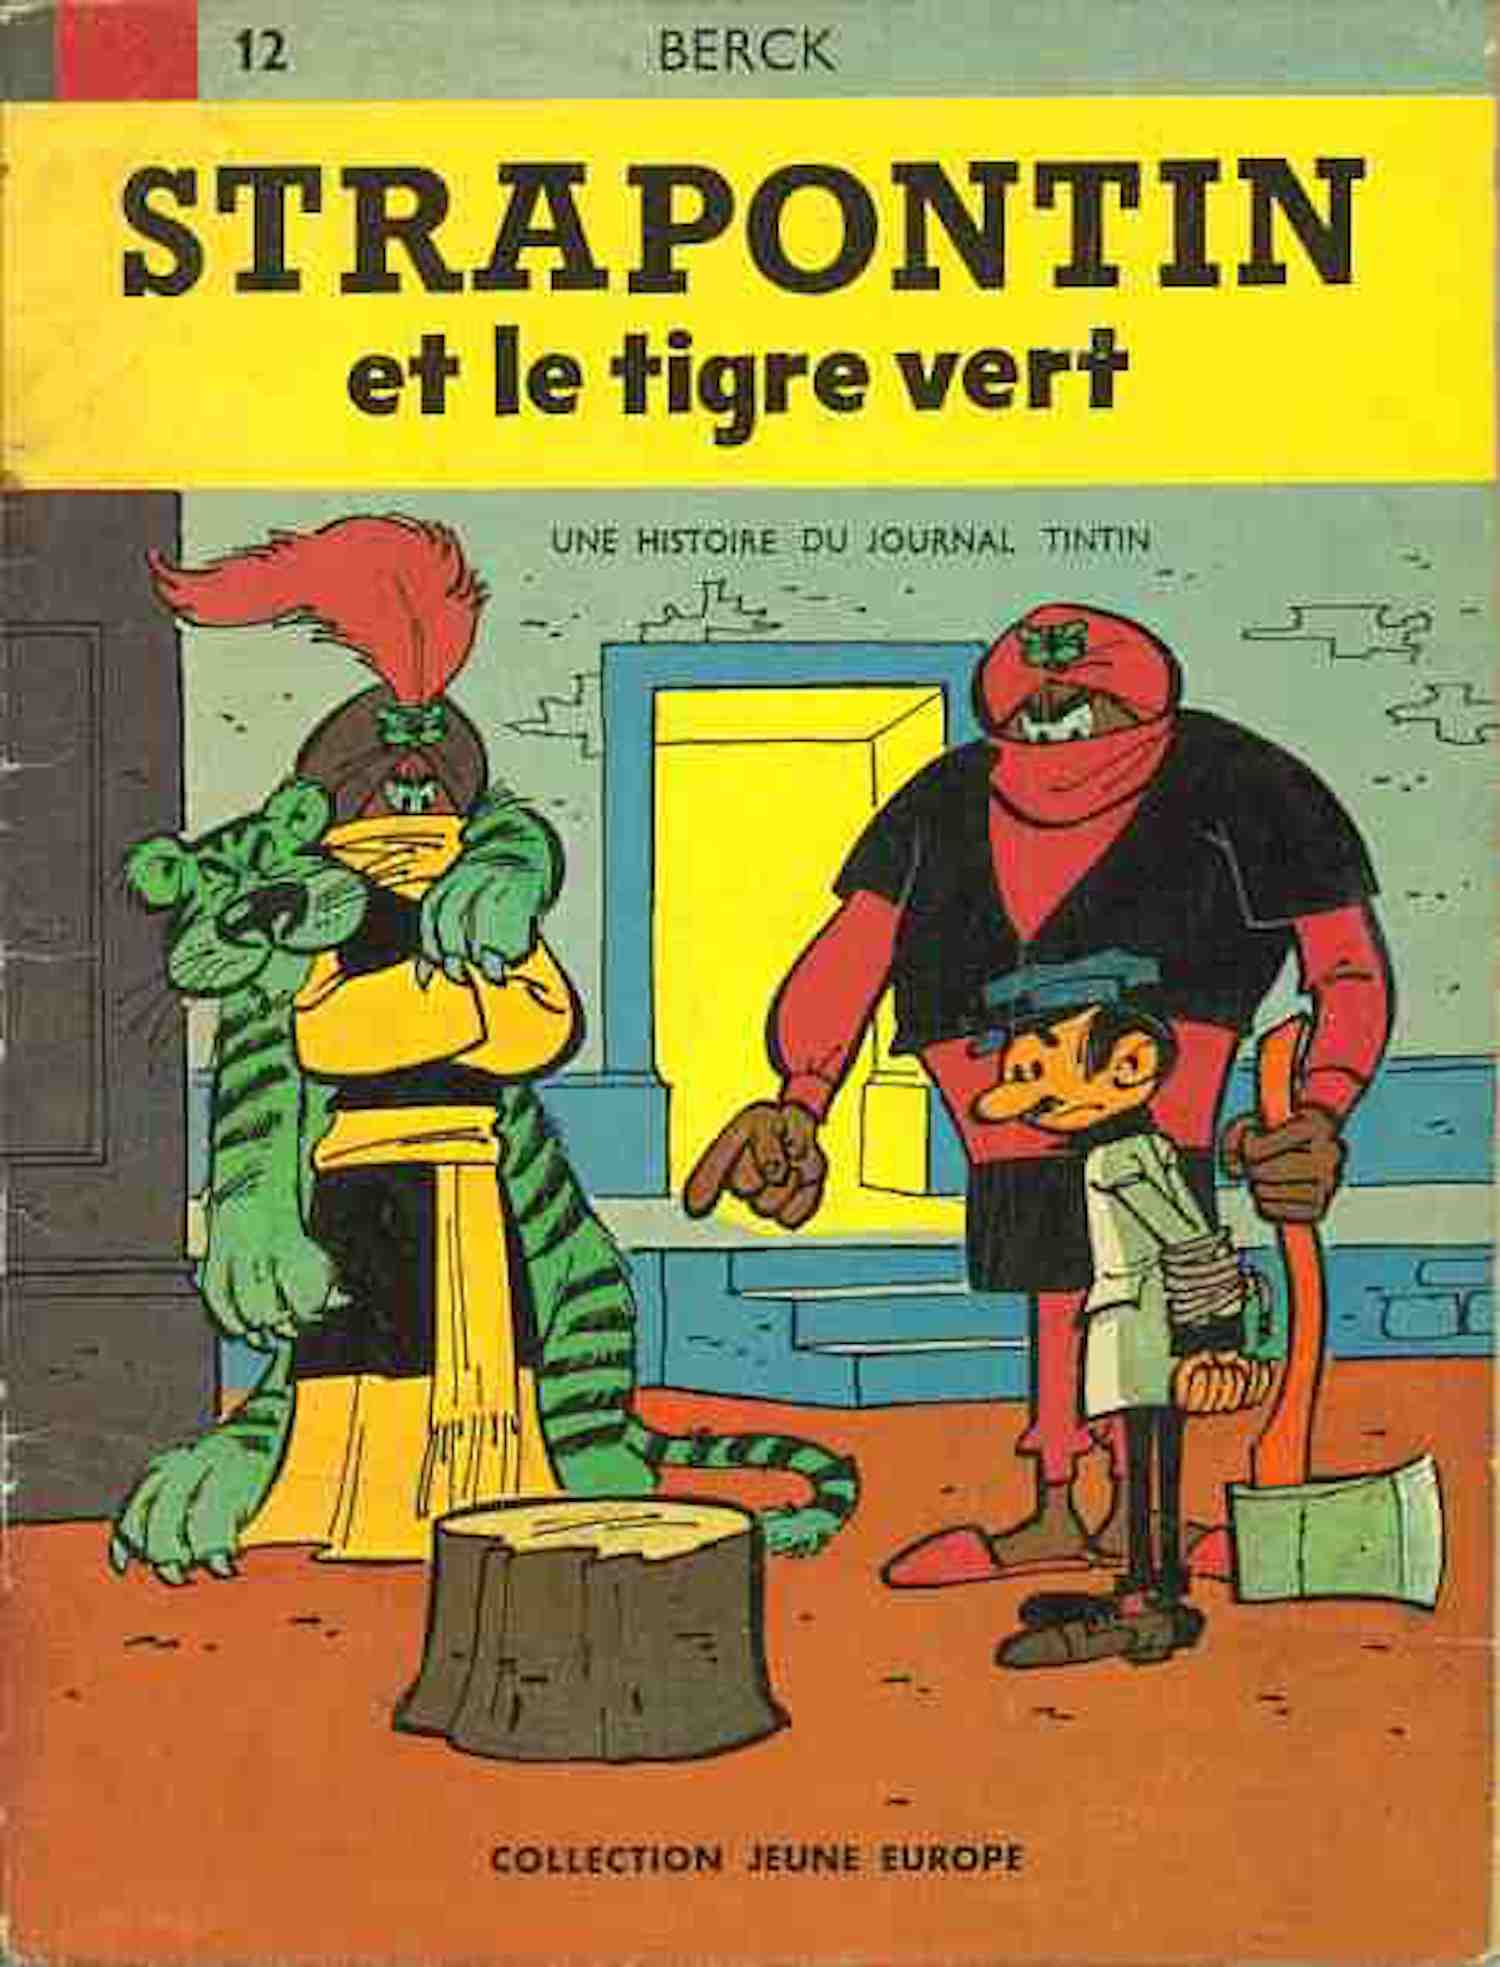 Décès de Berck, le dessinateur de "Rataplan", "Stapontin", "Lou" et "Sammy"